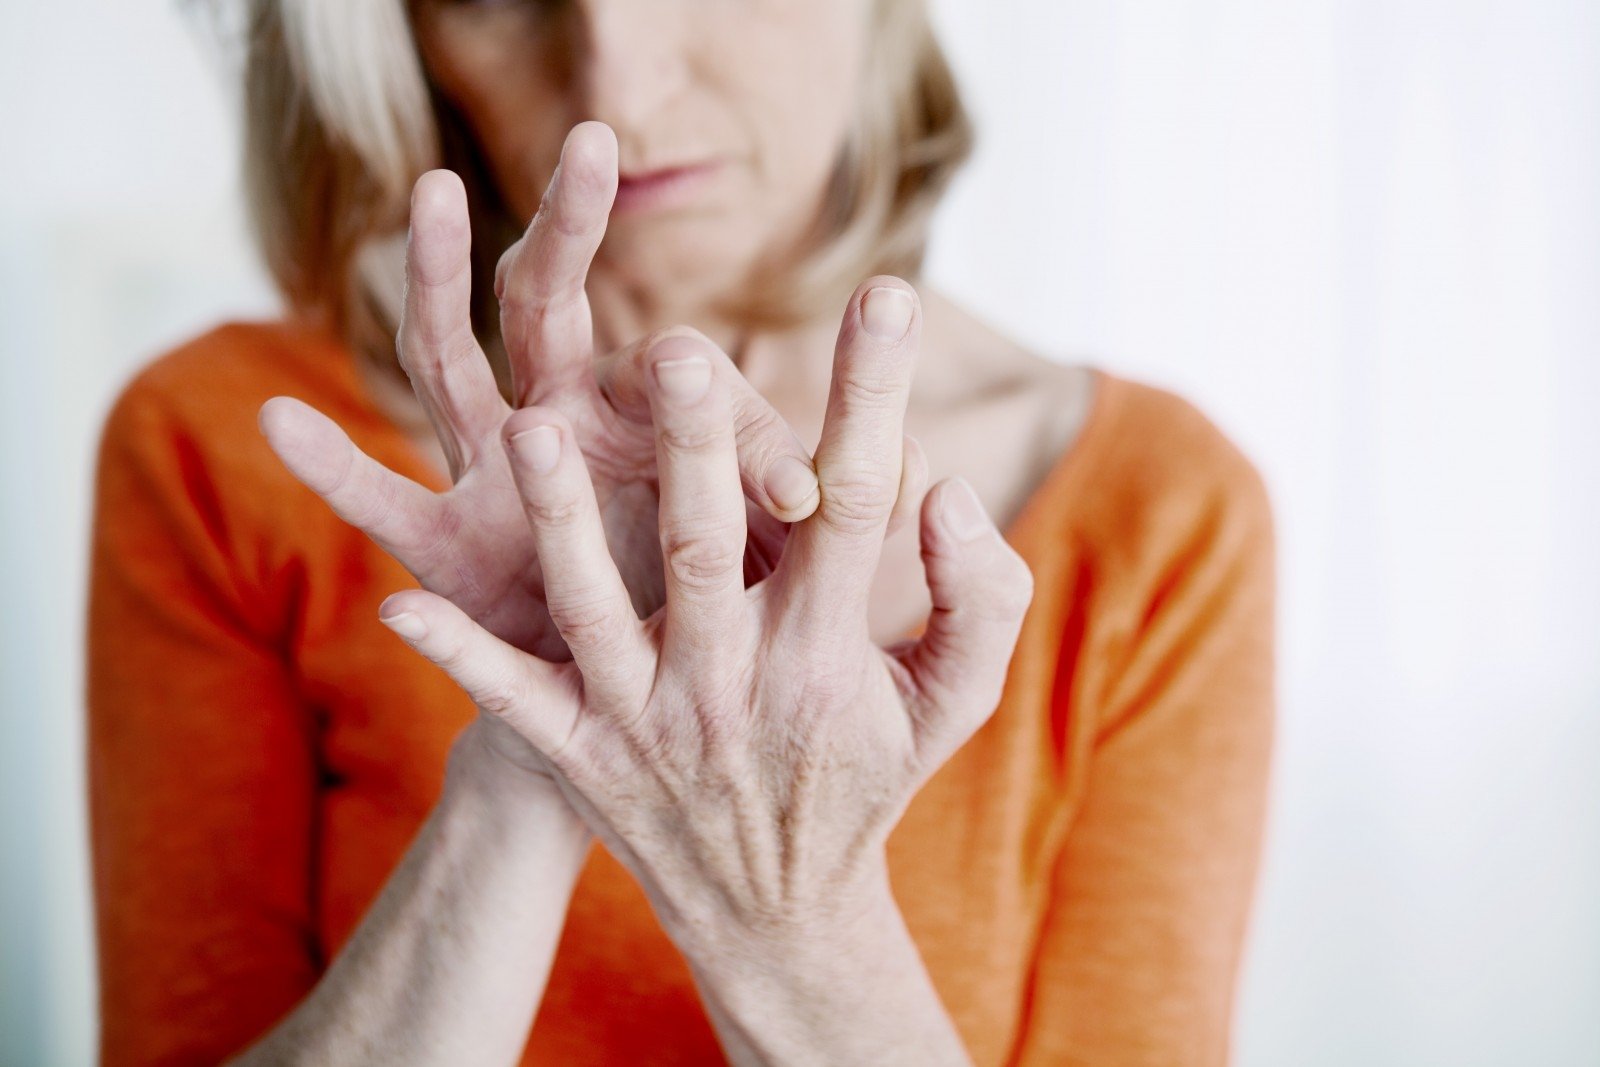 artritas rankų sulyginti gydymo grupėse labai skauda sąnarius visam kūnui